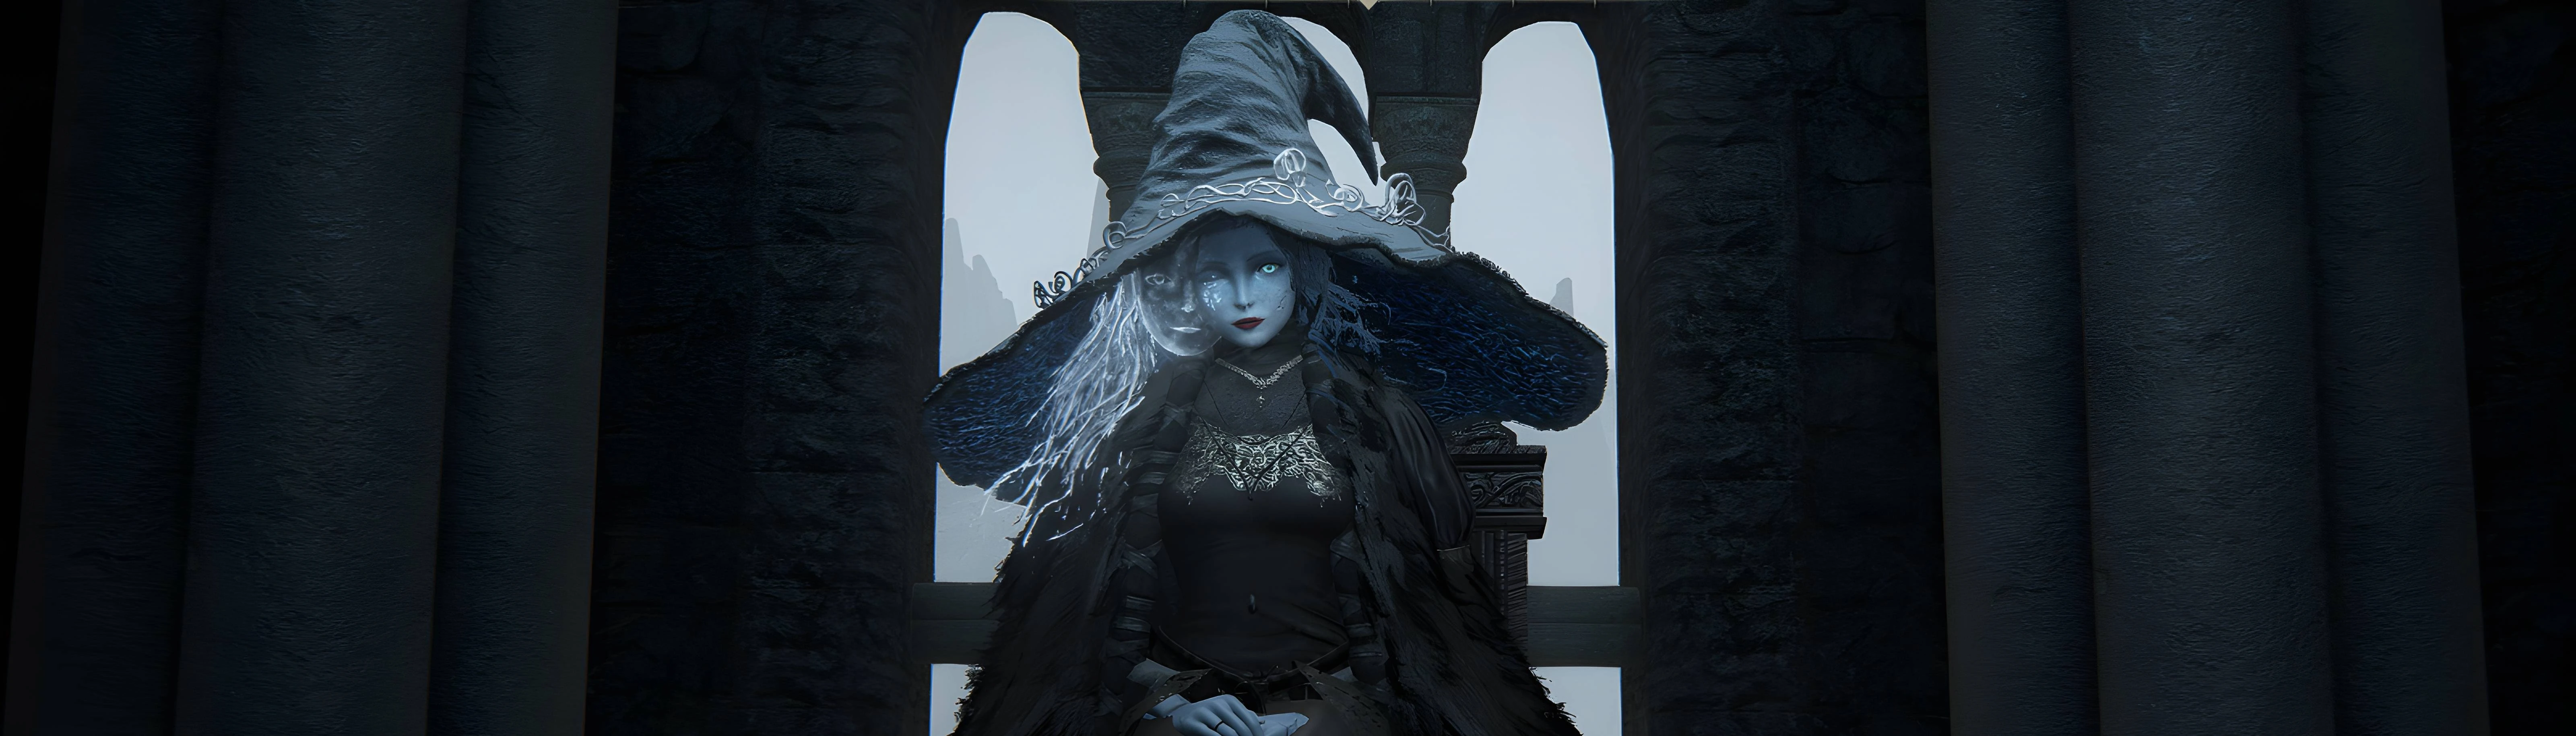 Steam Workshop::Elden Ring Ranni The Witch